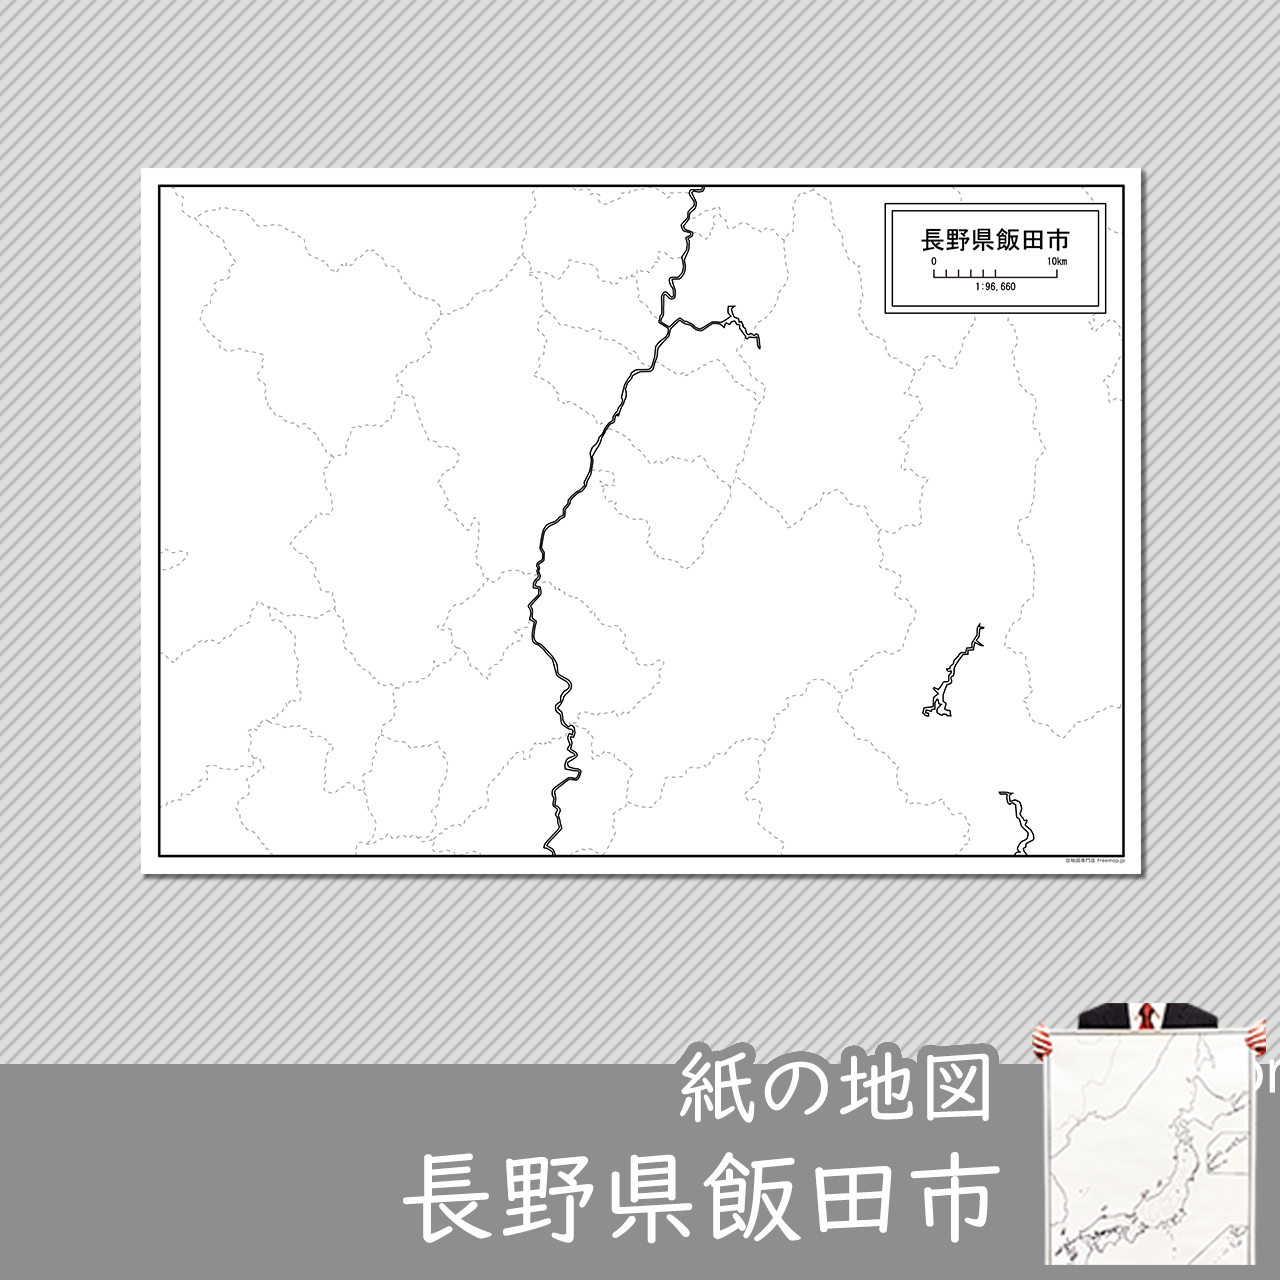 飯田市の紙の白地図のサムネイル